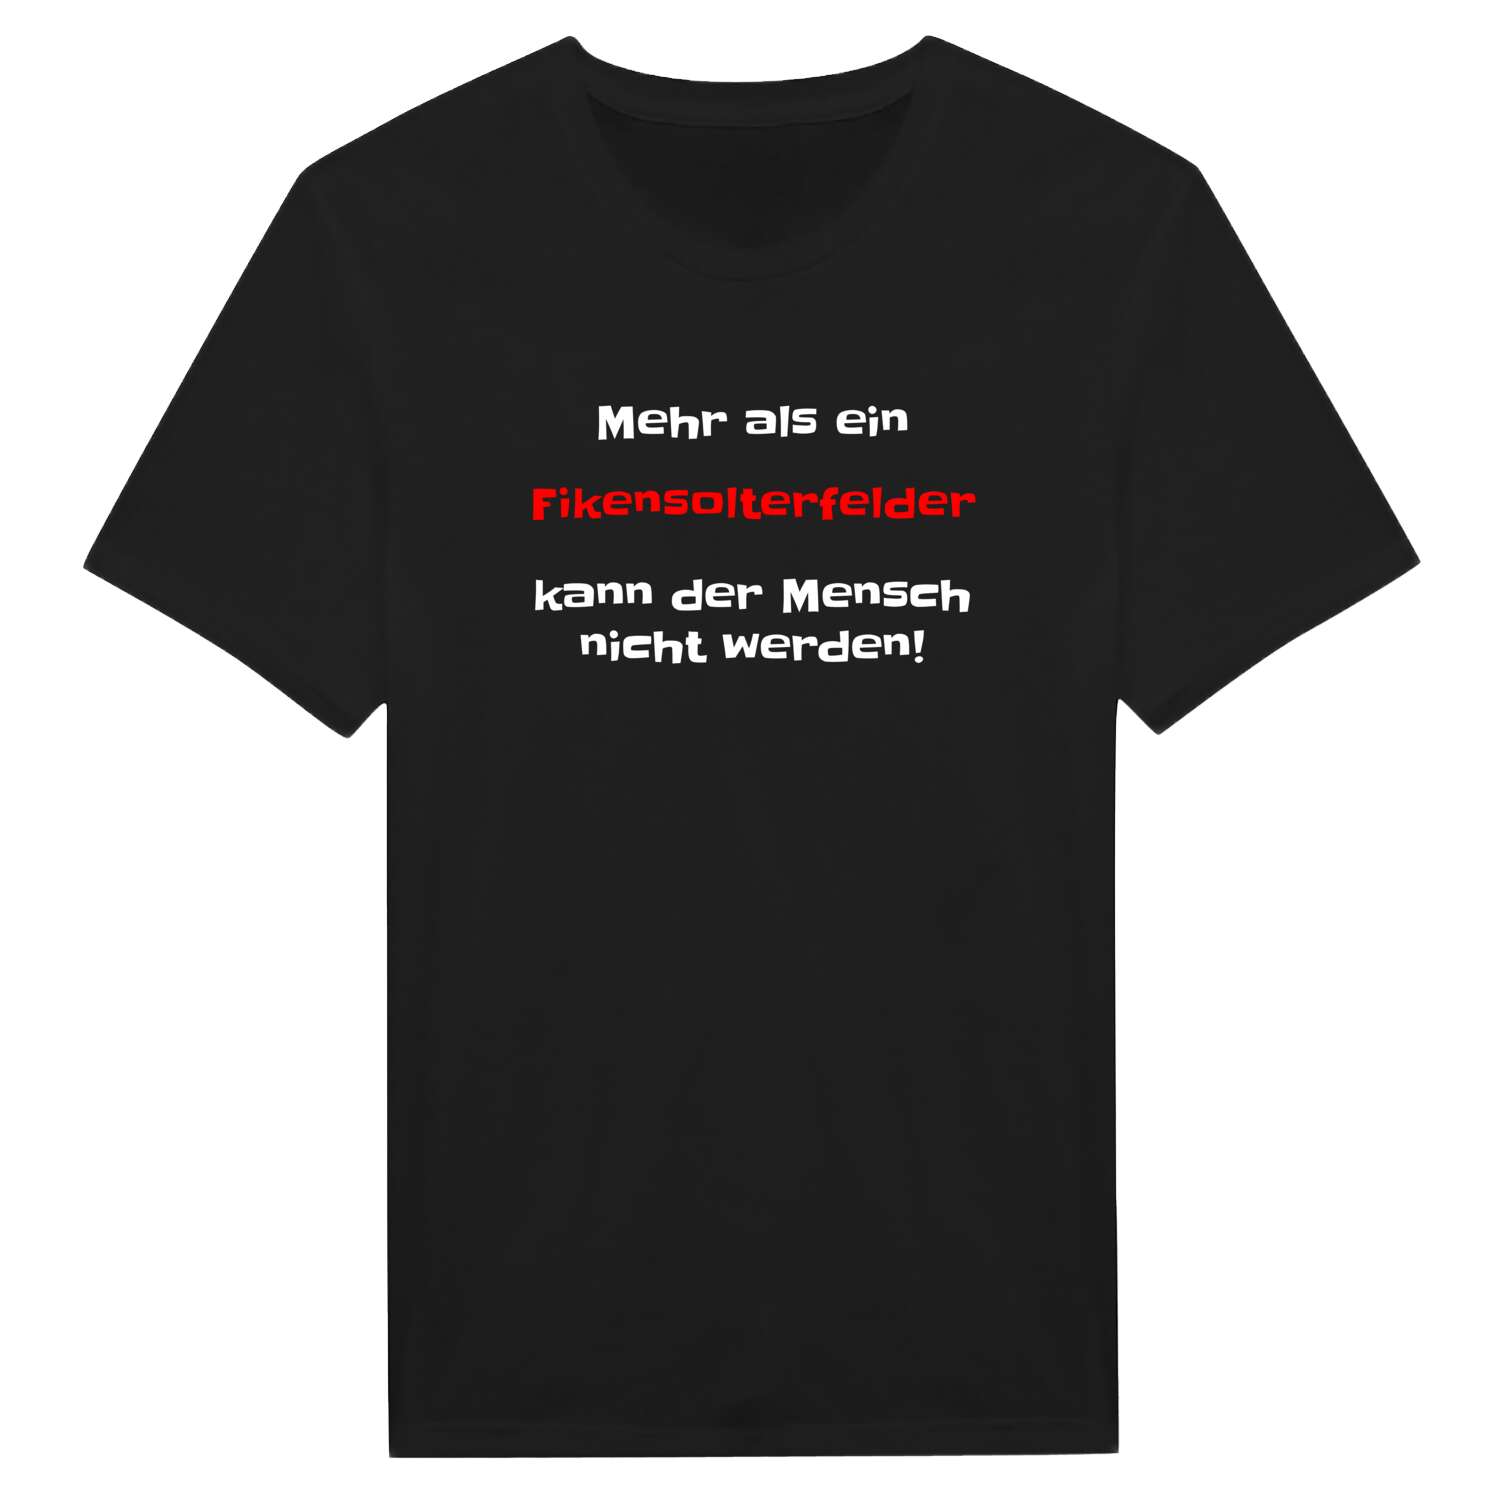 Fikensolterfeld T-Shirt »Mehr als ein«